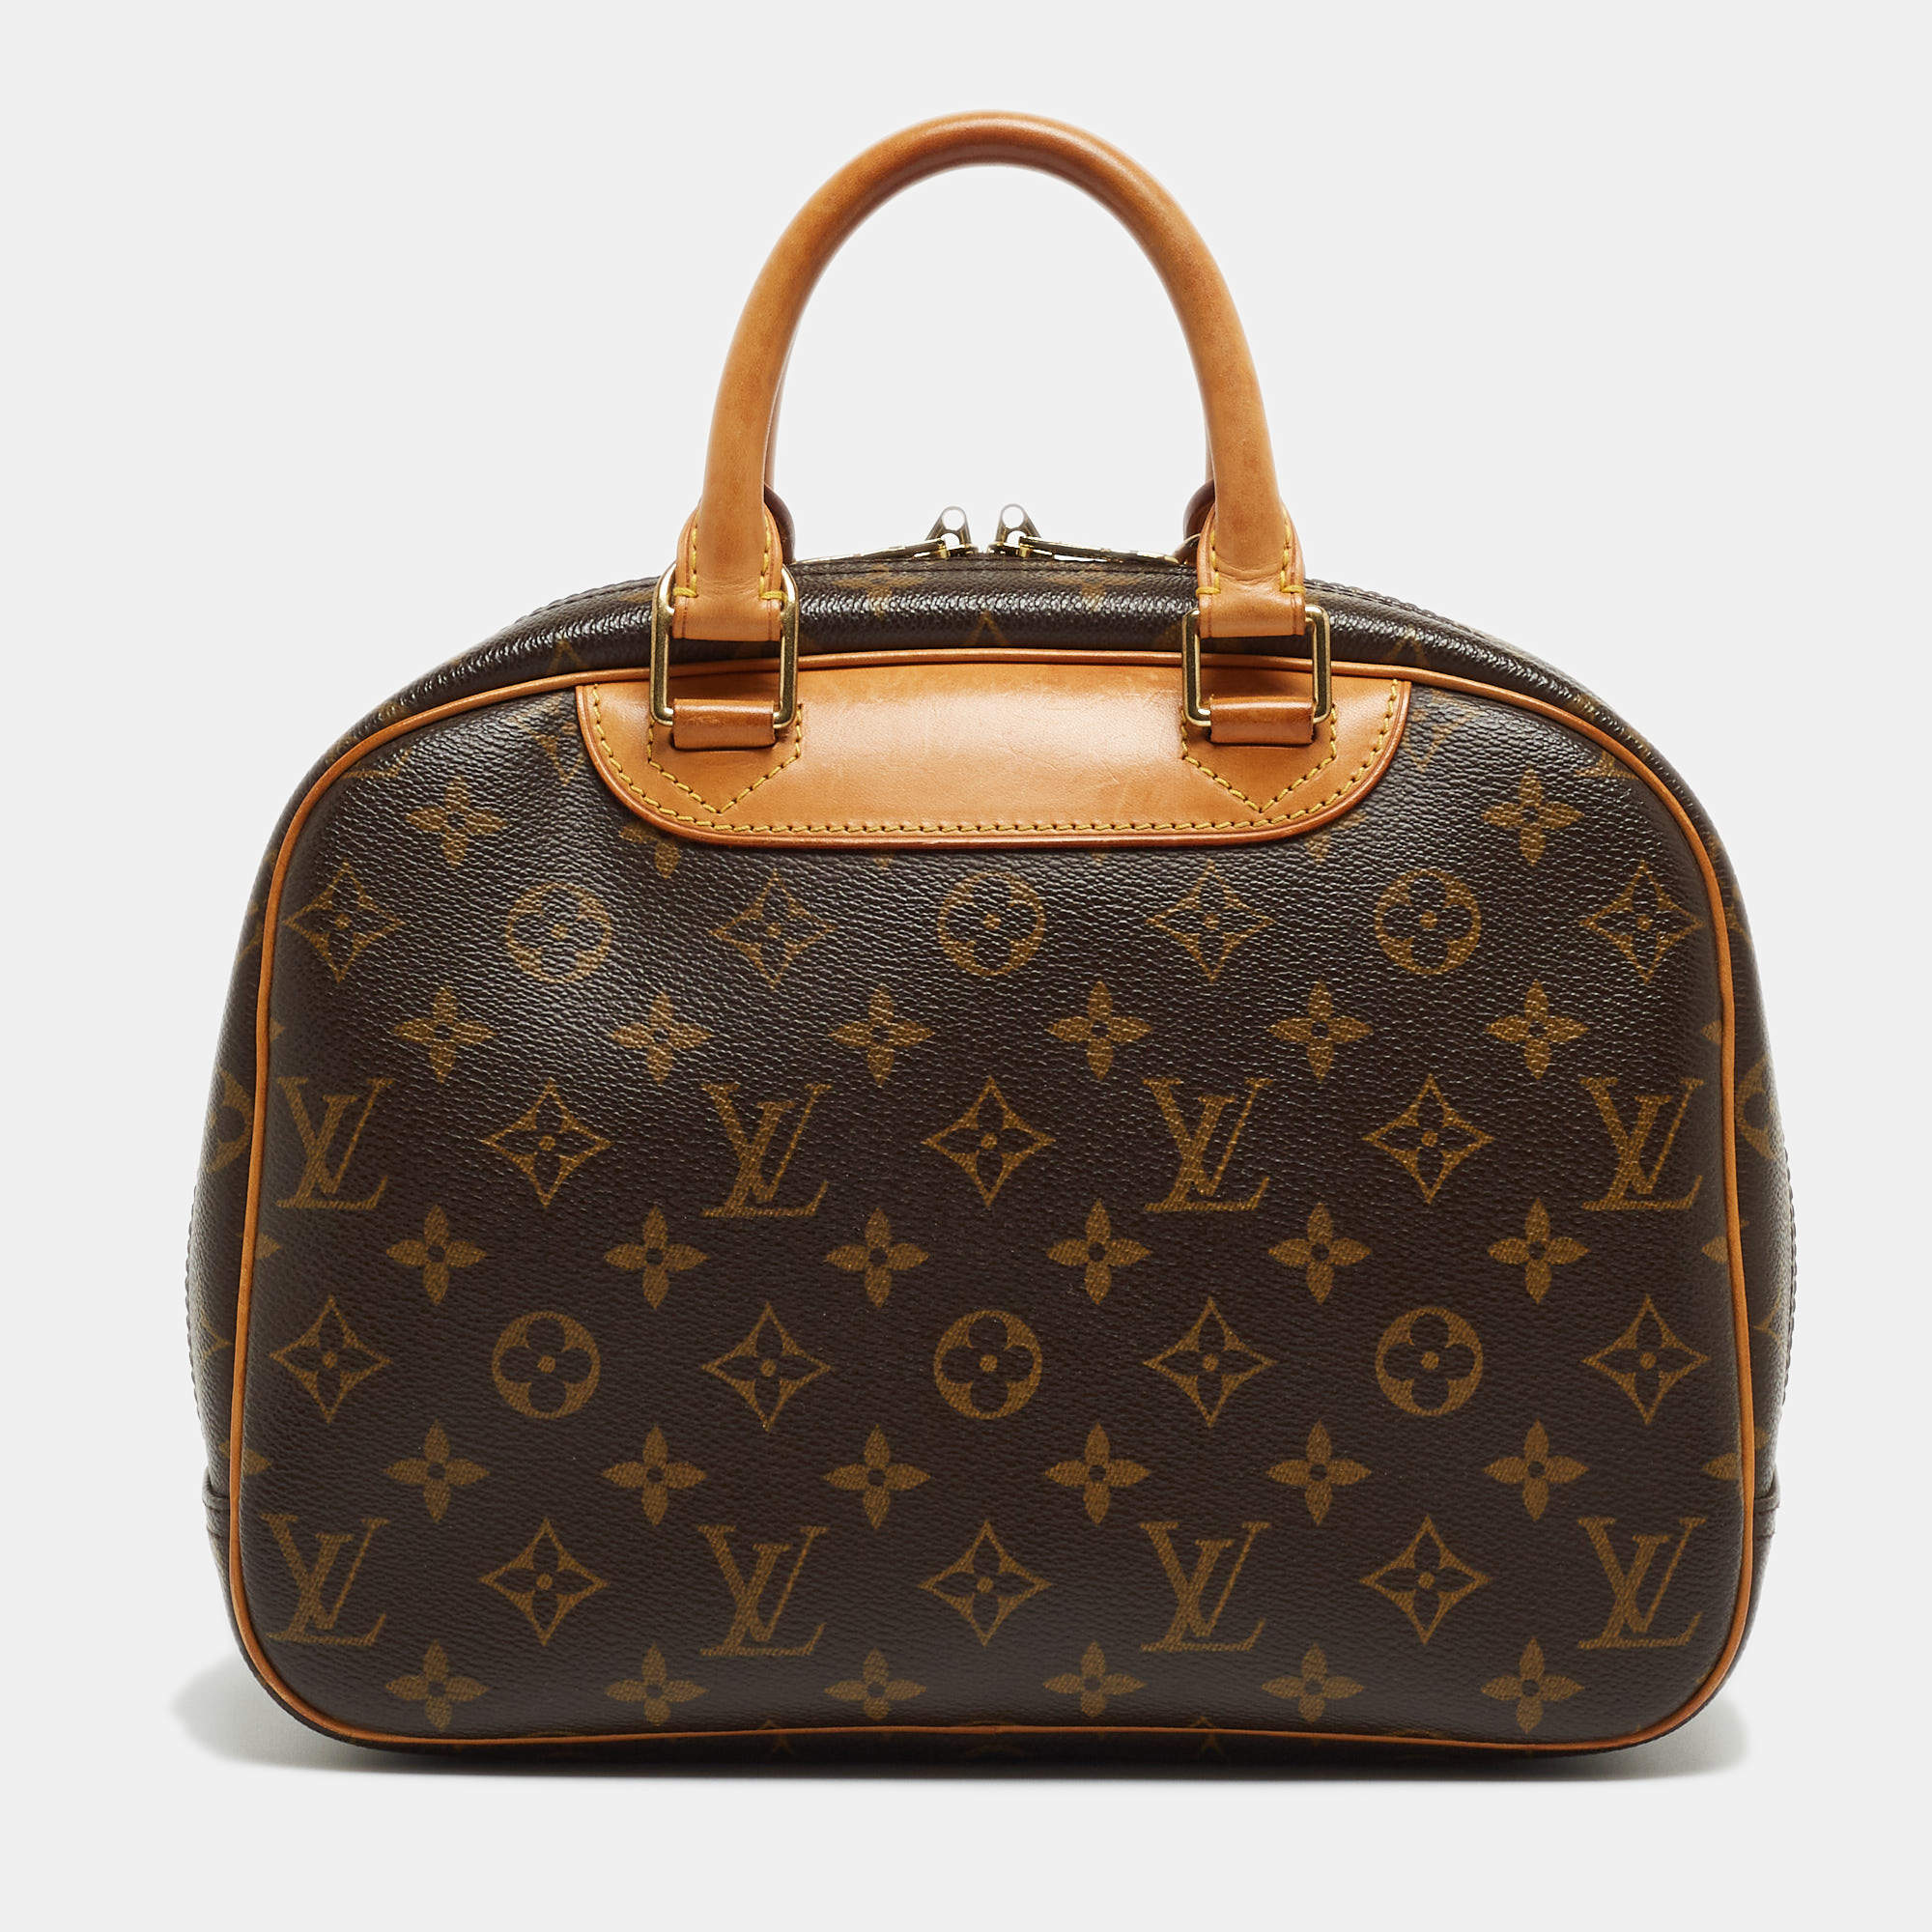 LV Louis Vuitton Monogram Canvas Trouville Bag